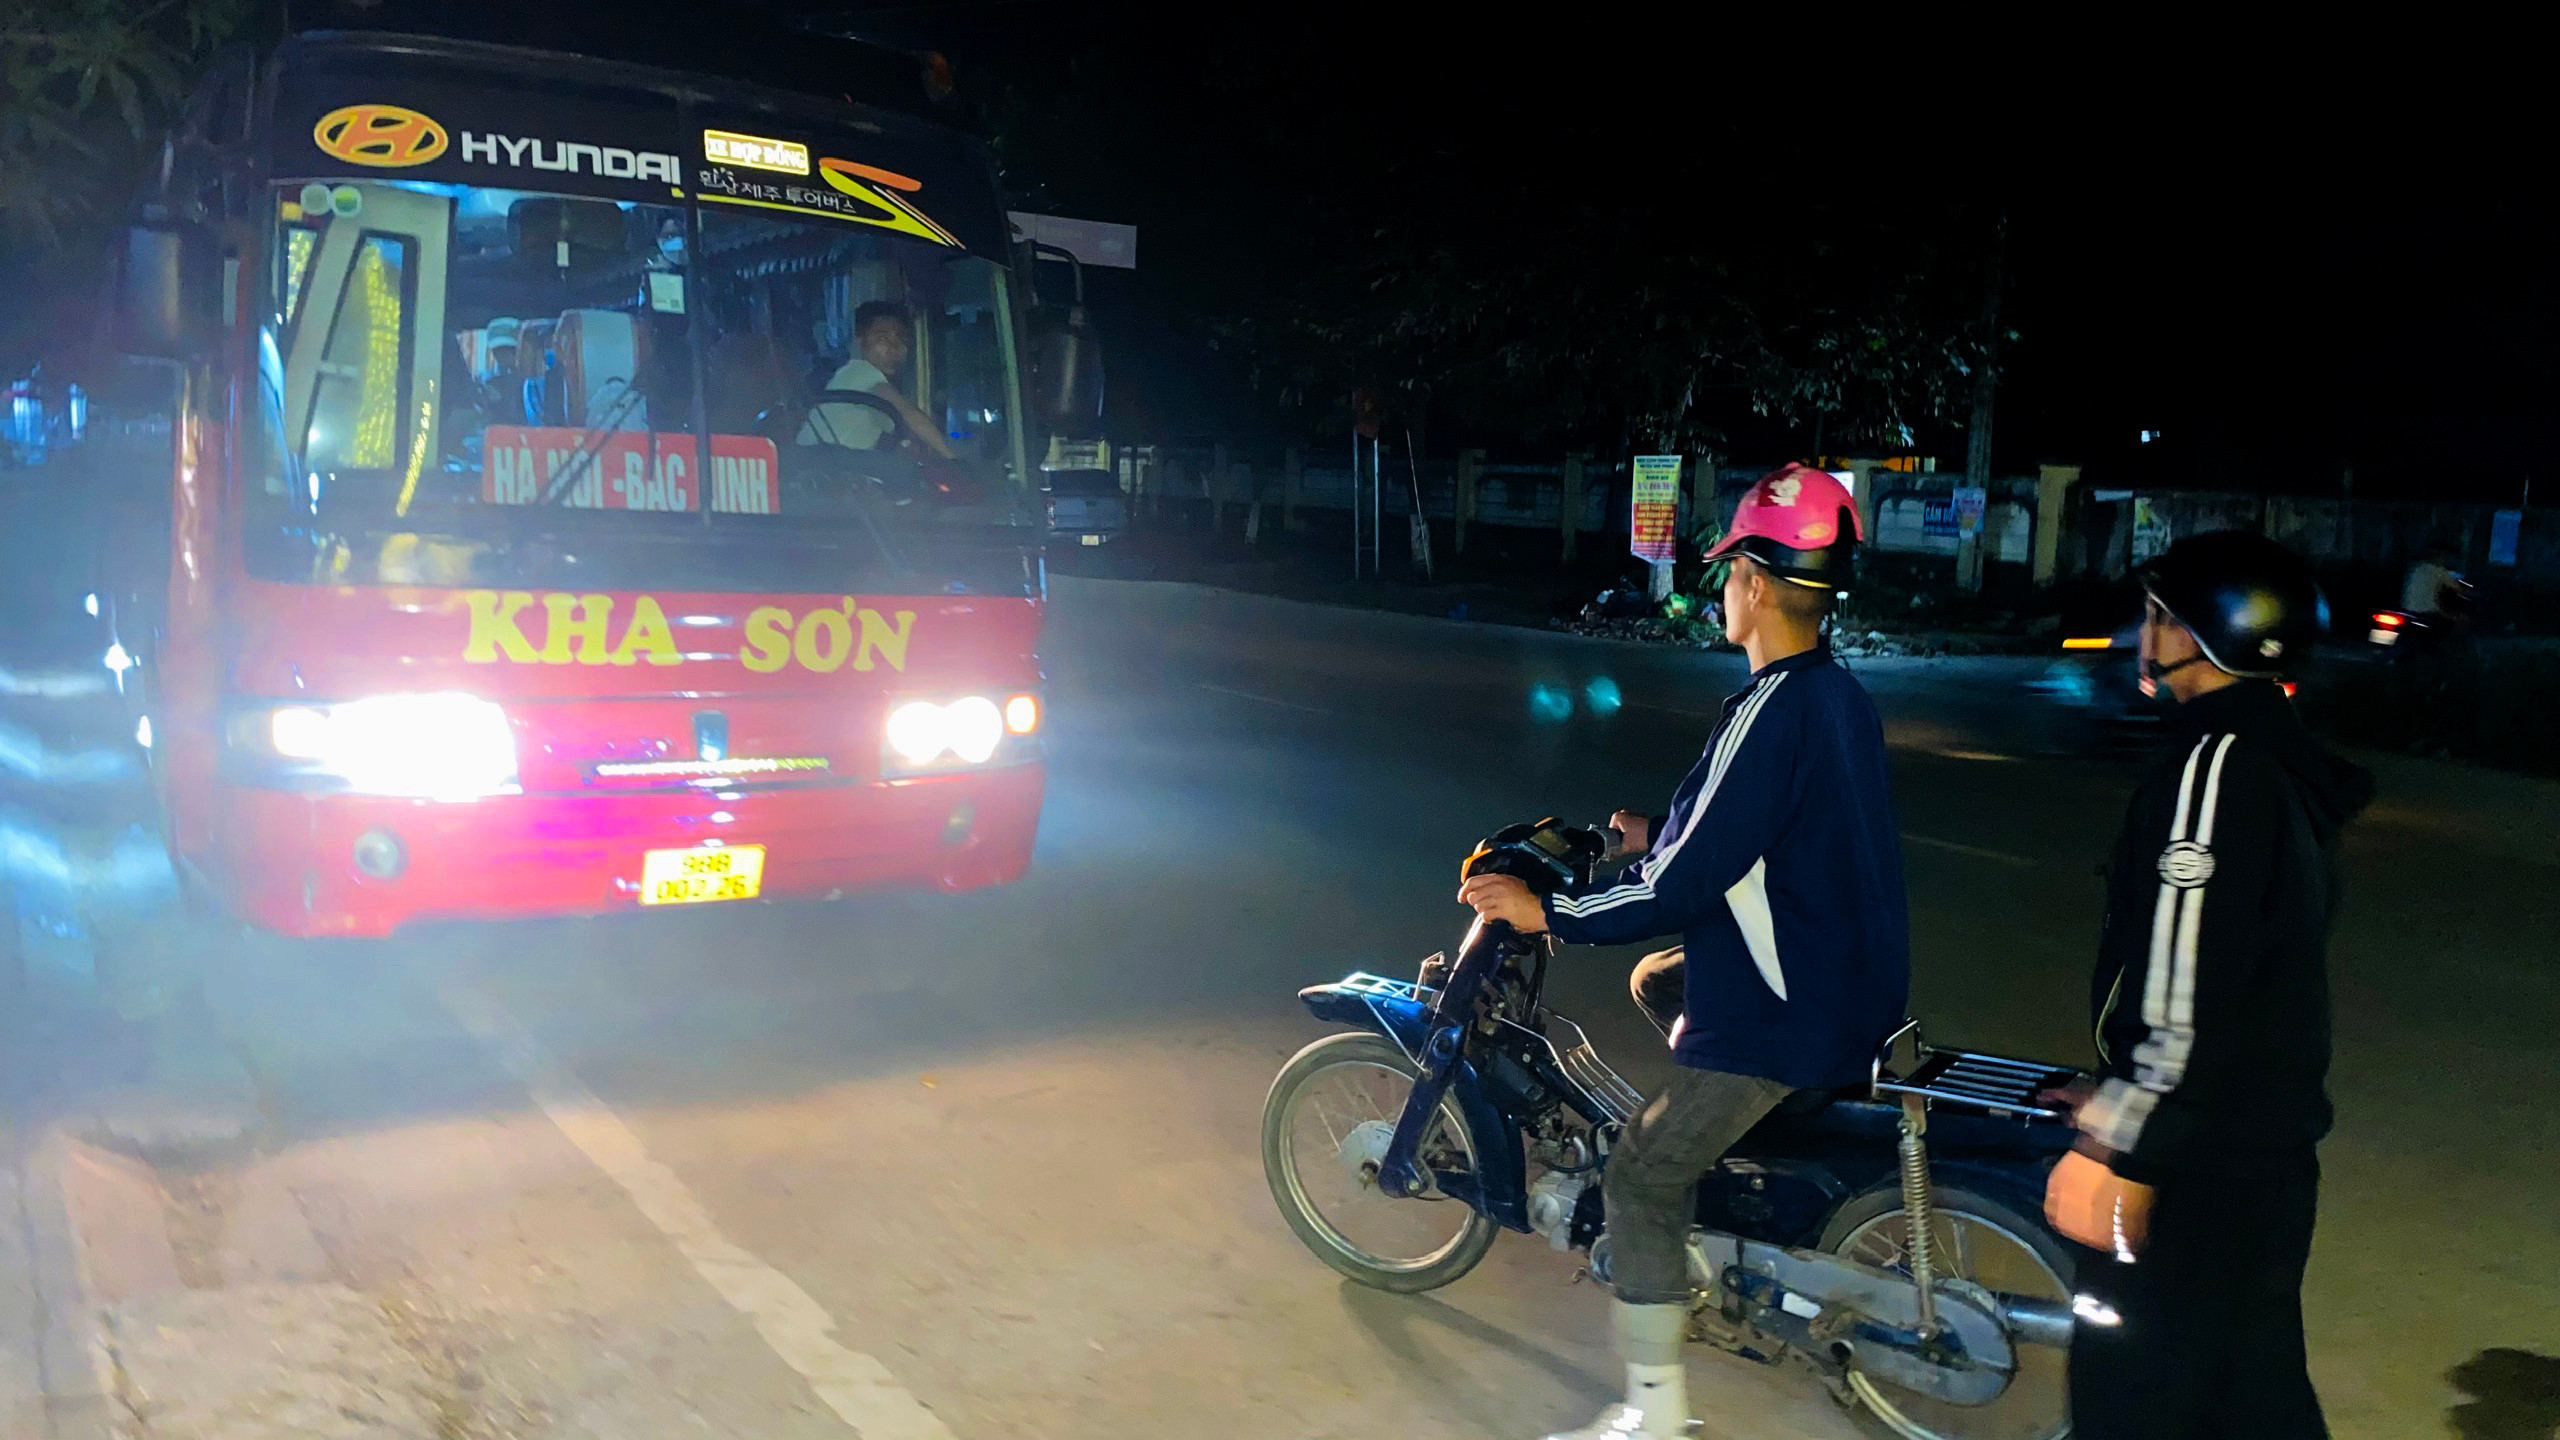 bna_Người dân huyện Quế Phong phải bắt xe ôm đến thị trấn Kim Sơn để đi xe trung chuyển ảnh Quang An.jpg